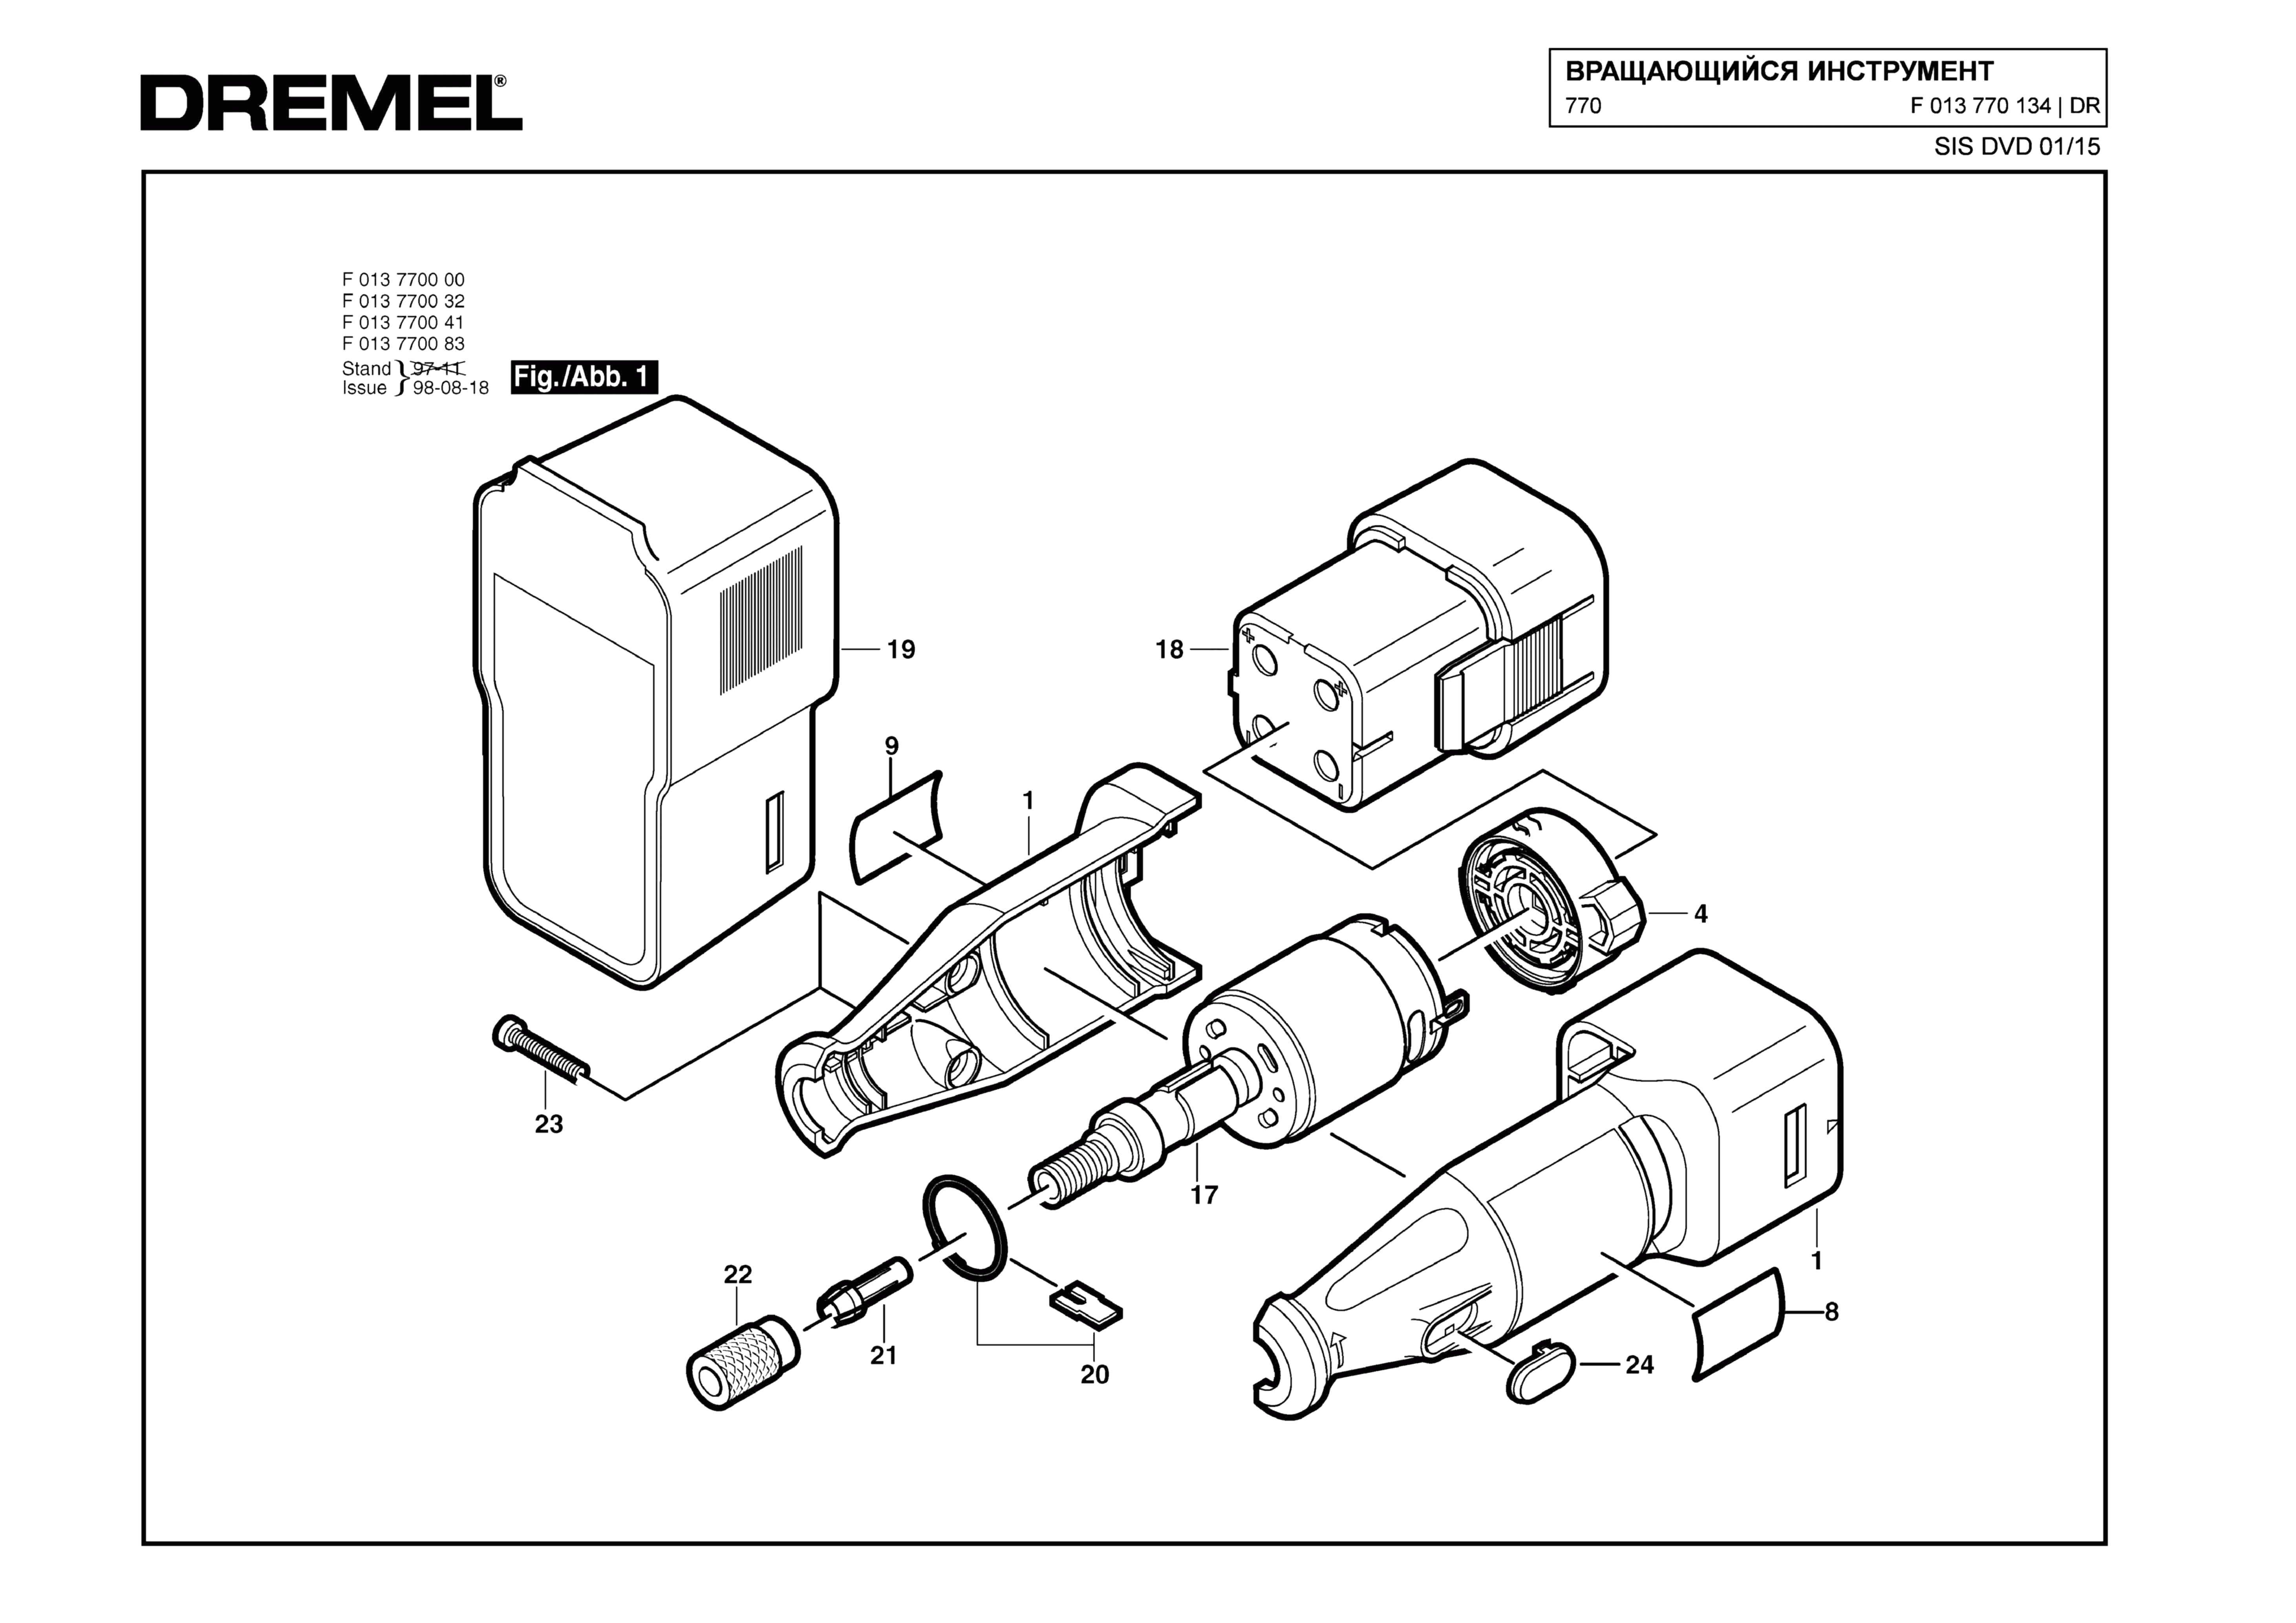 Шлифовальная машина Dremel 770 (ТИП F013770134)